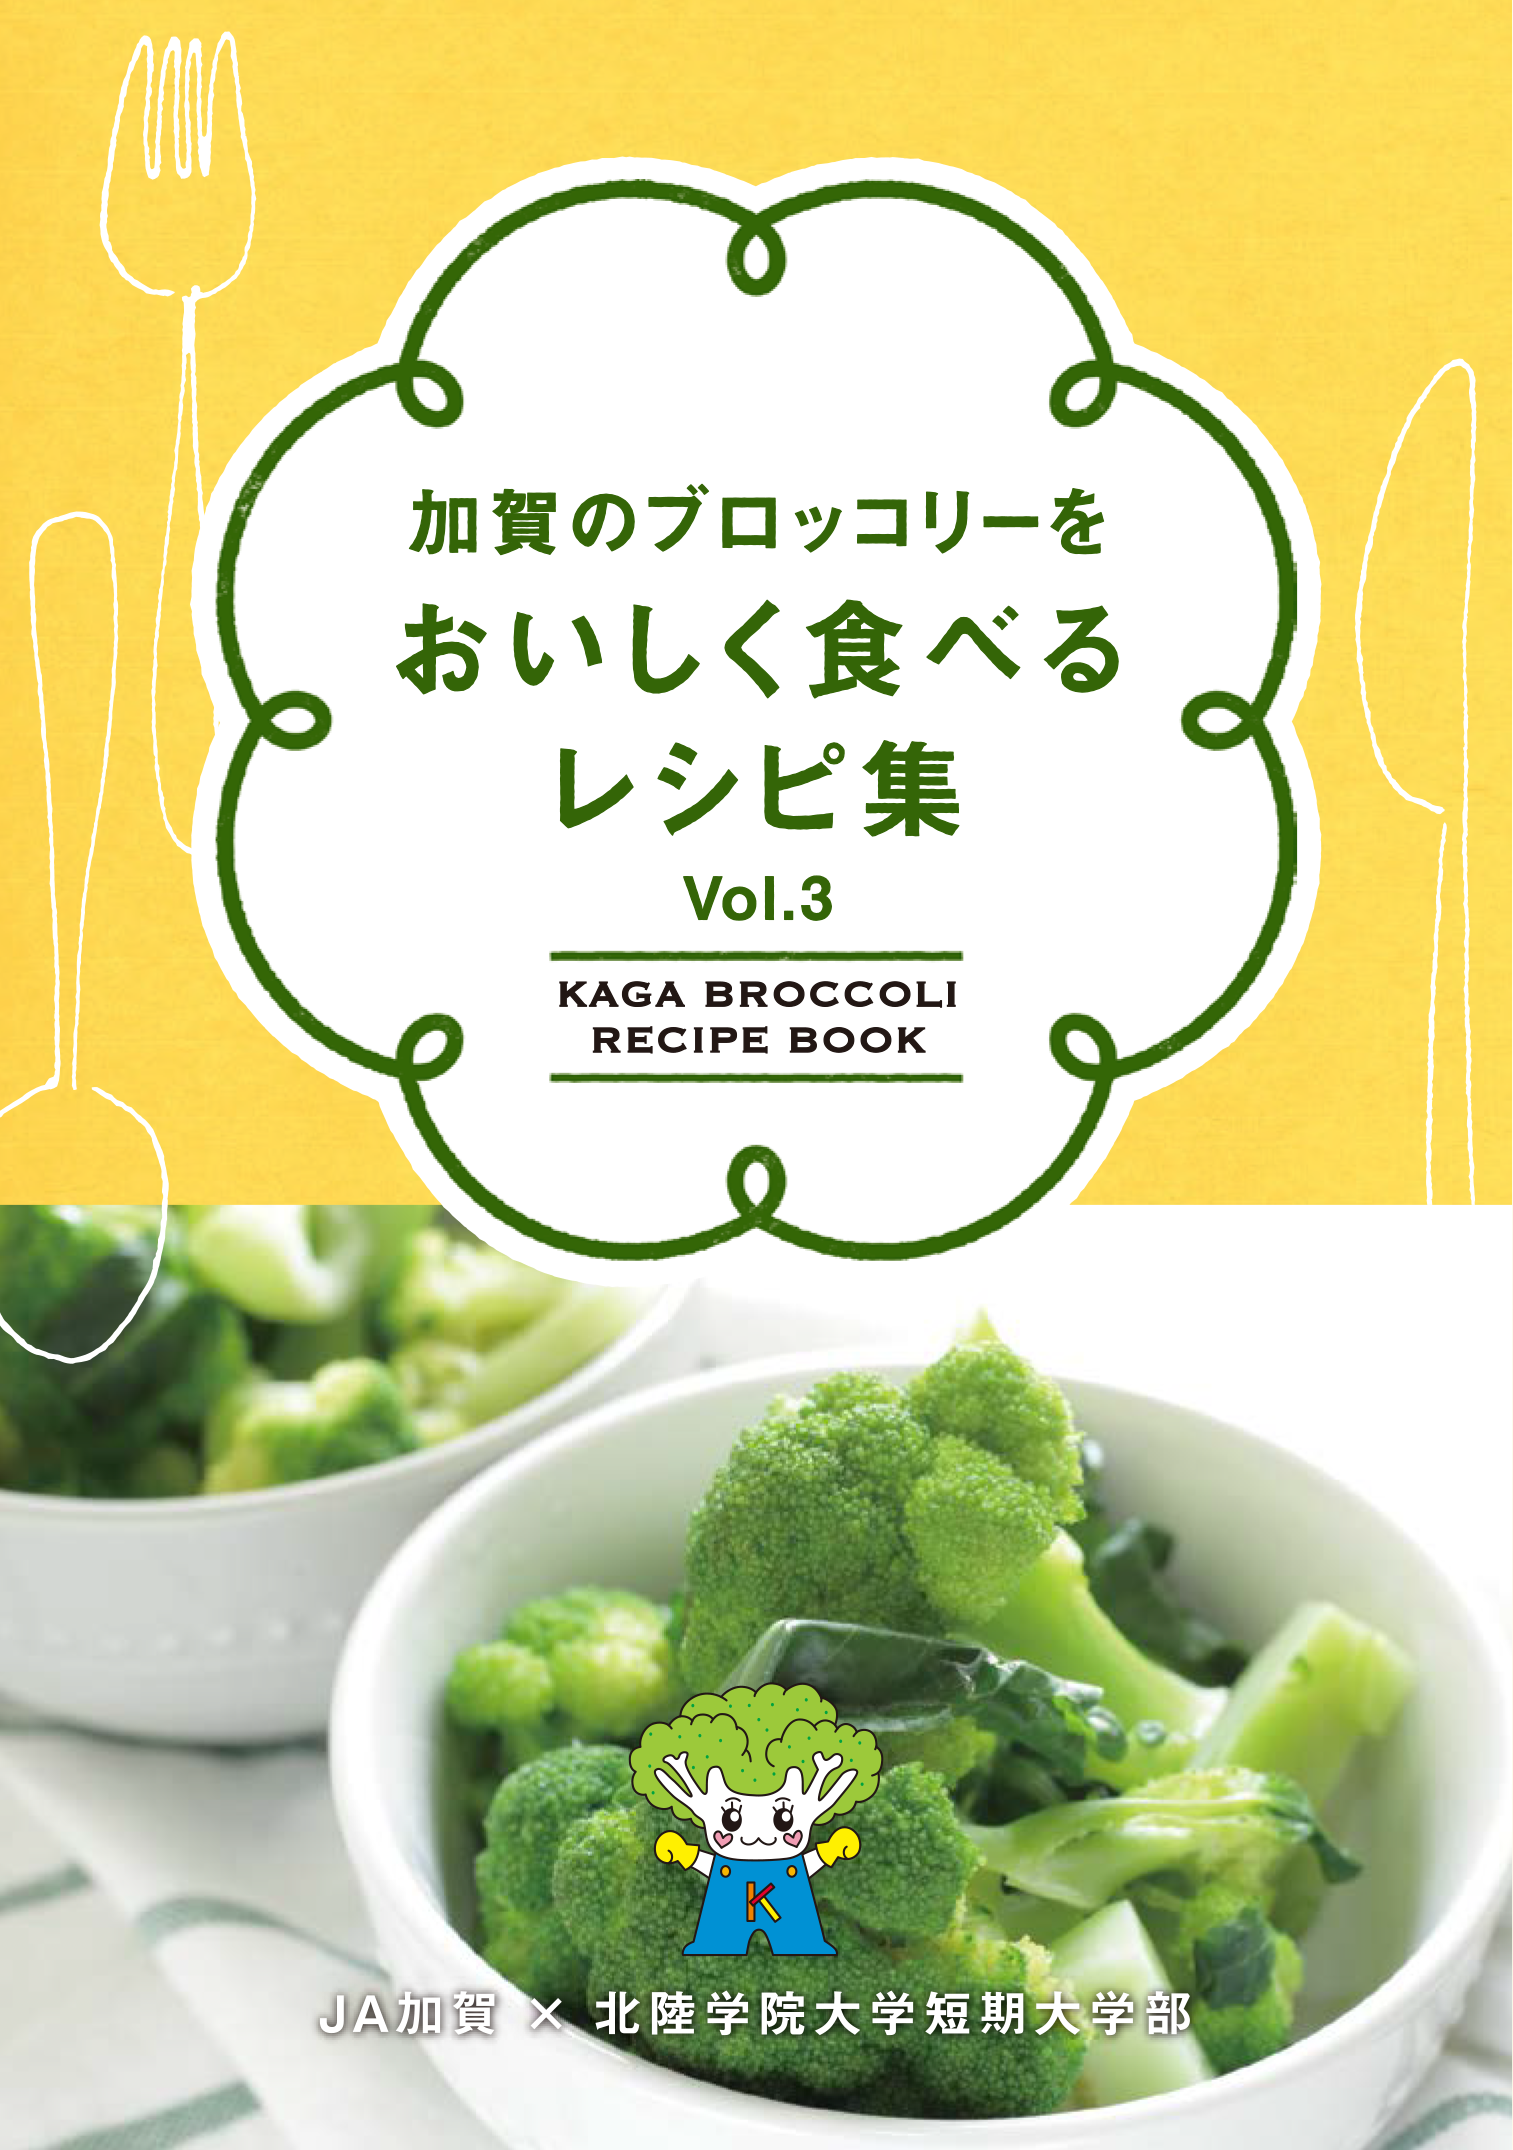 加賀のブロッコリーをおいしく食べるレシピ集Vol.3